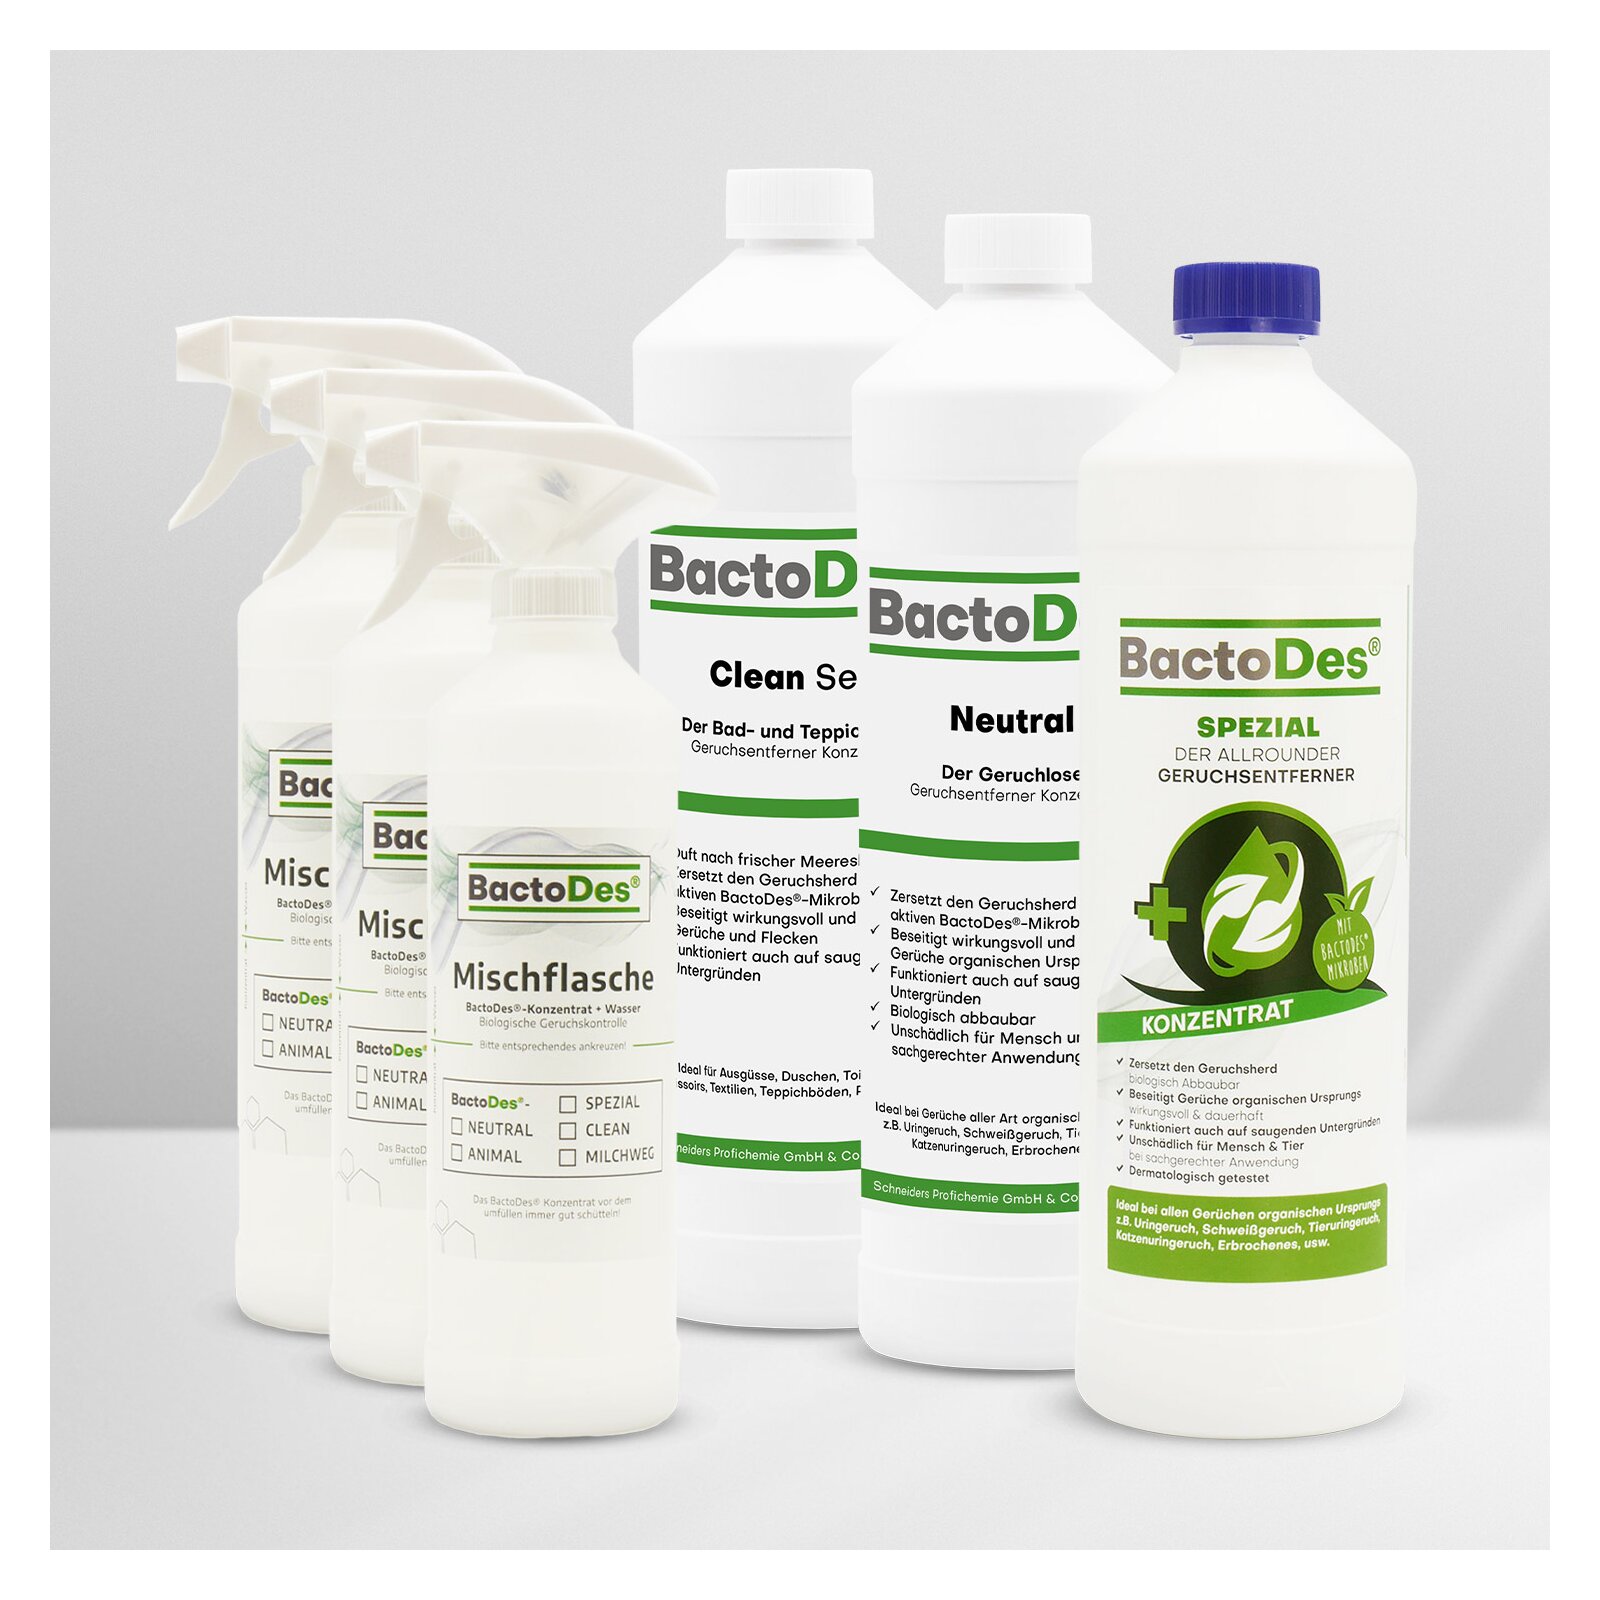 BactoDes-3-er-Set 'Clean-Spezial-Neutral' incl. 3 Misch- und Sprühflaschen